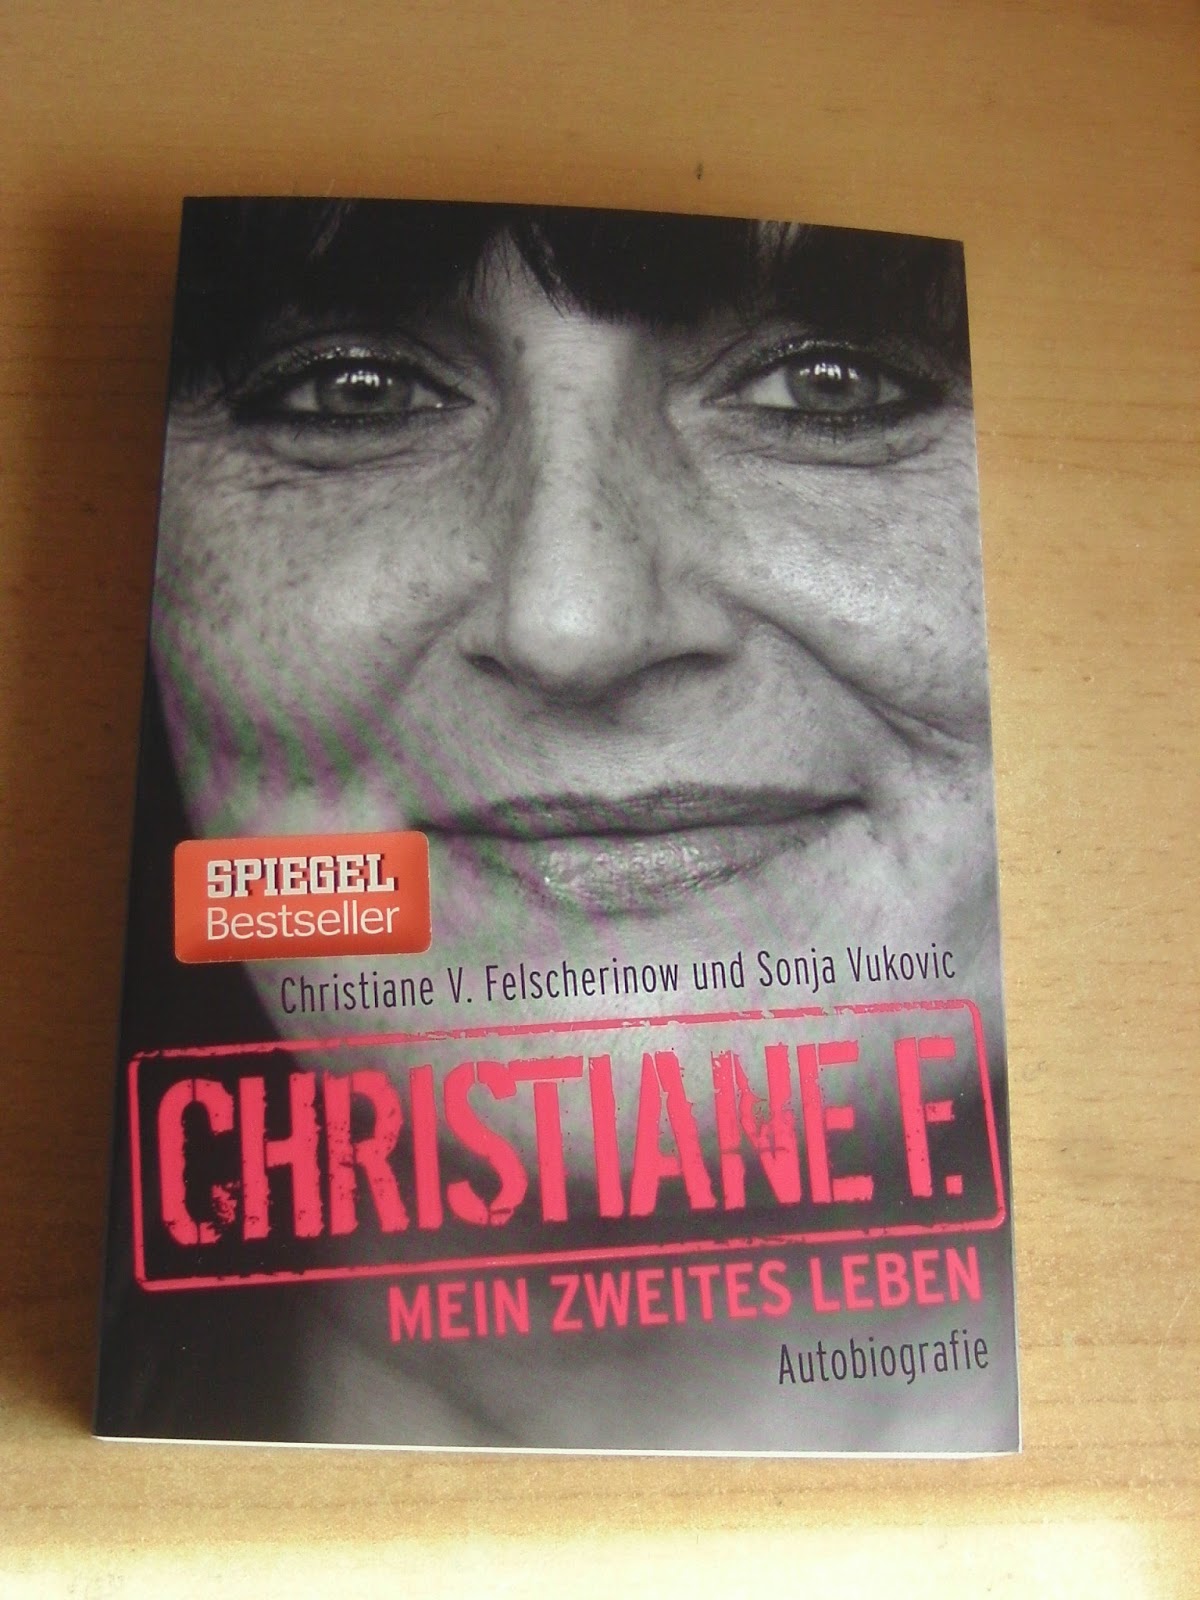 http://www.amazon.de/Christiane-F-zweites-Leben-Autobiografie/dp/3943737128/ref=sr_1_1?s=books&ie=UTF8&qid=1424039725&sr=1-1&keywords=mein+zweites+leben